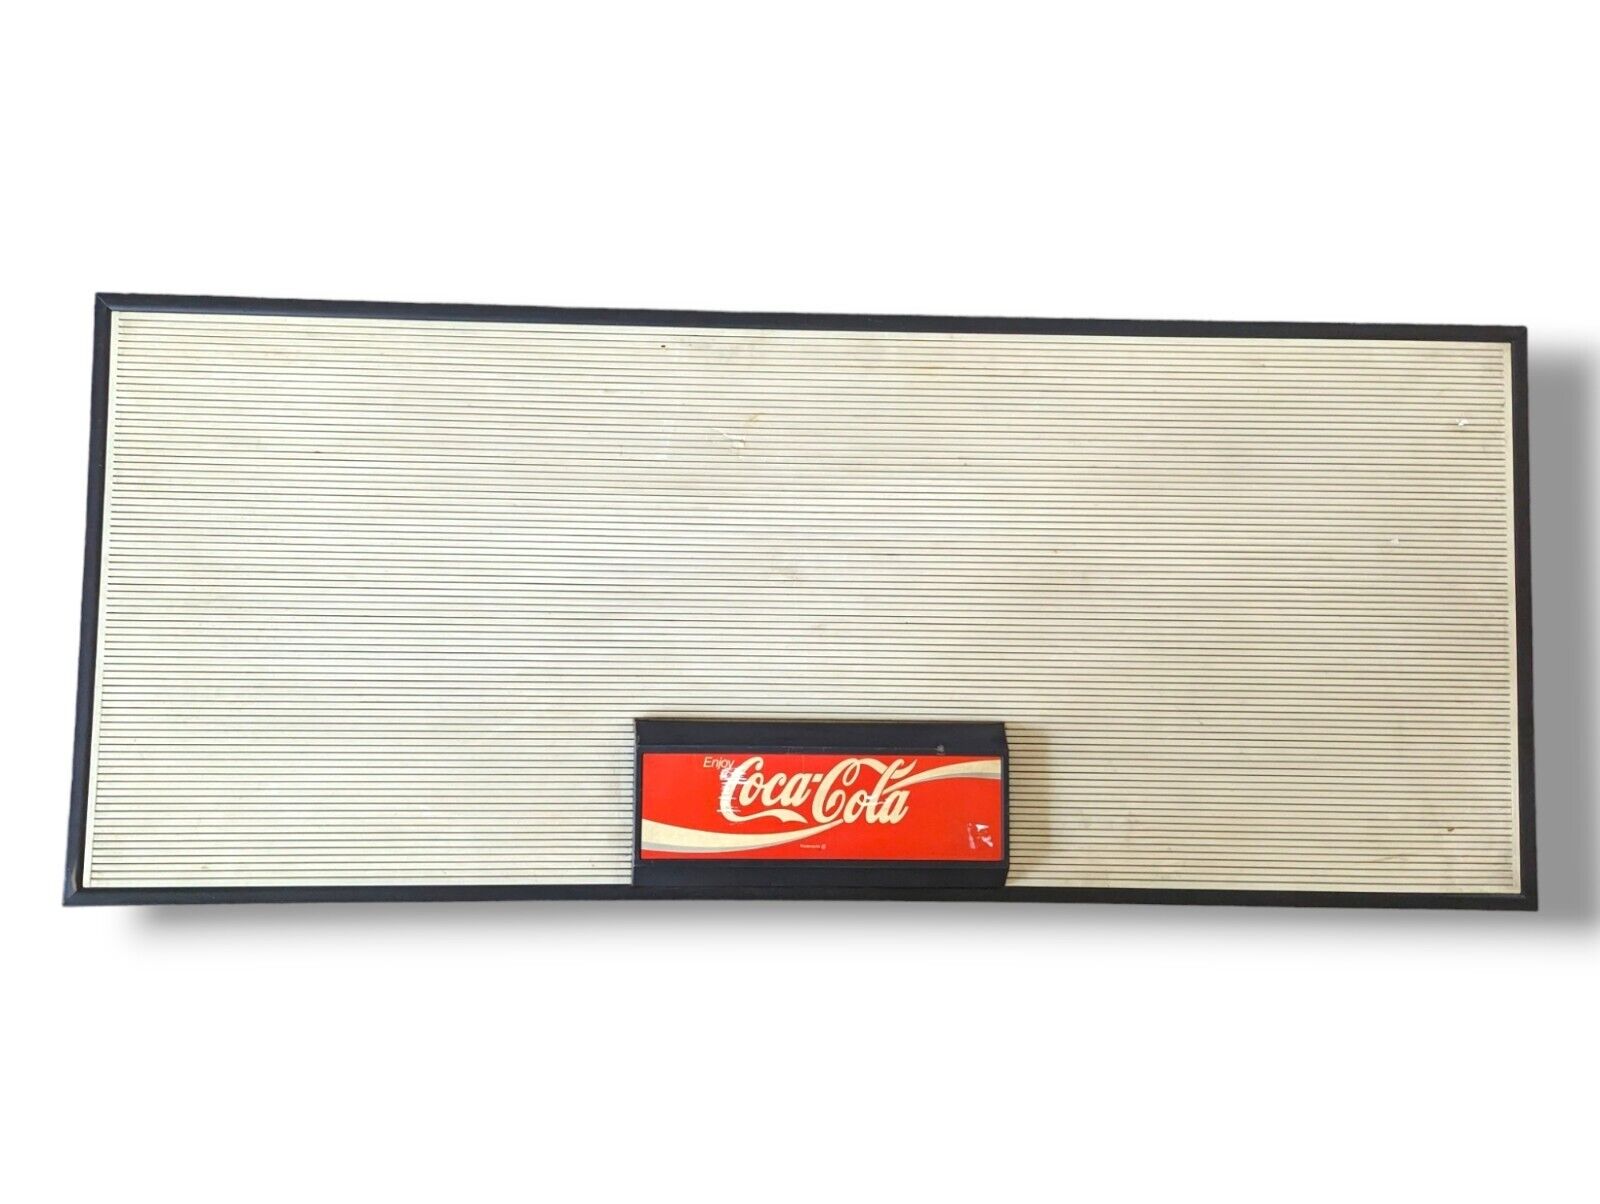 Rare 4 Ft Long Coca-Cola Sandwich Sign